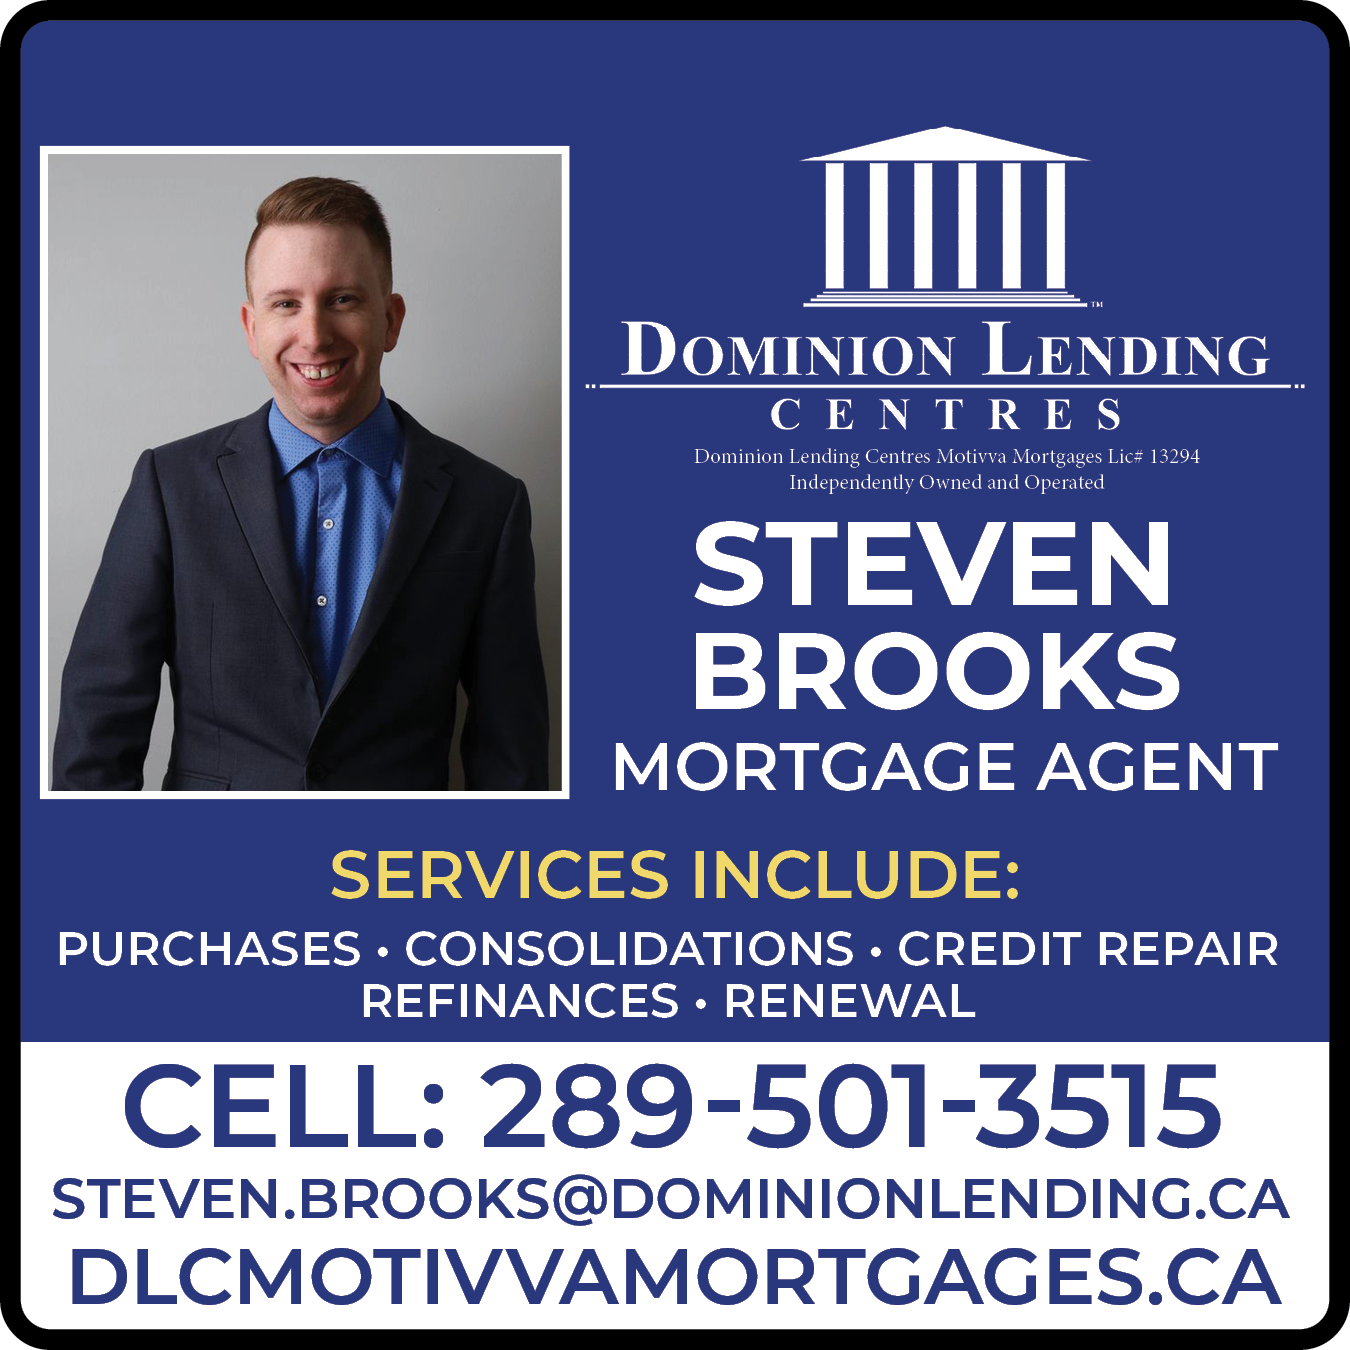 Dominion Lending Centres - Steven Brooks